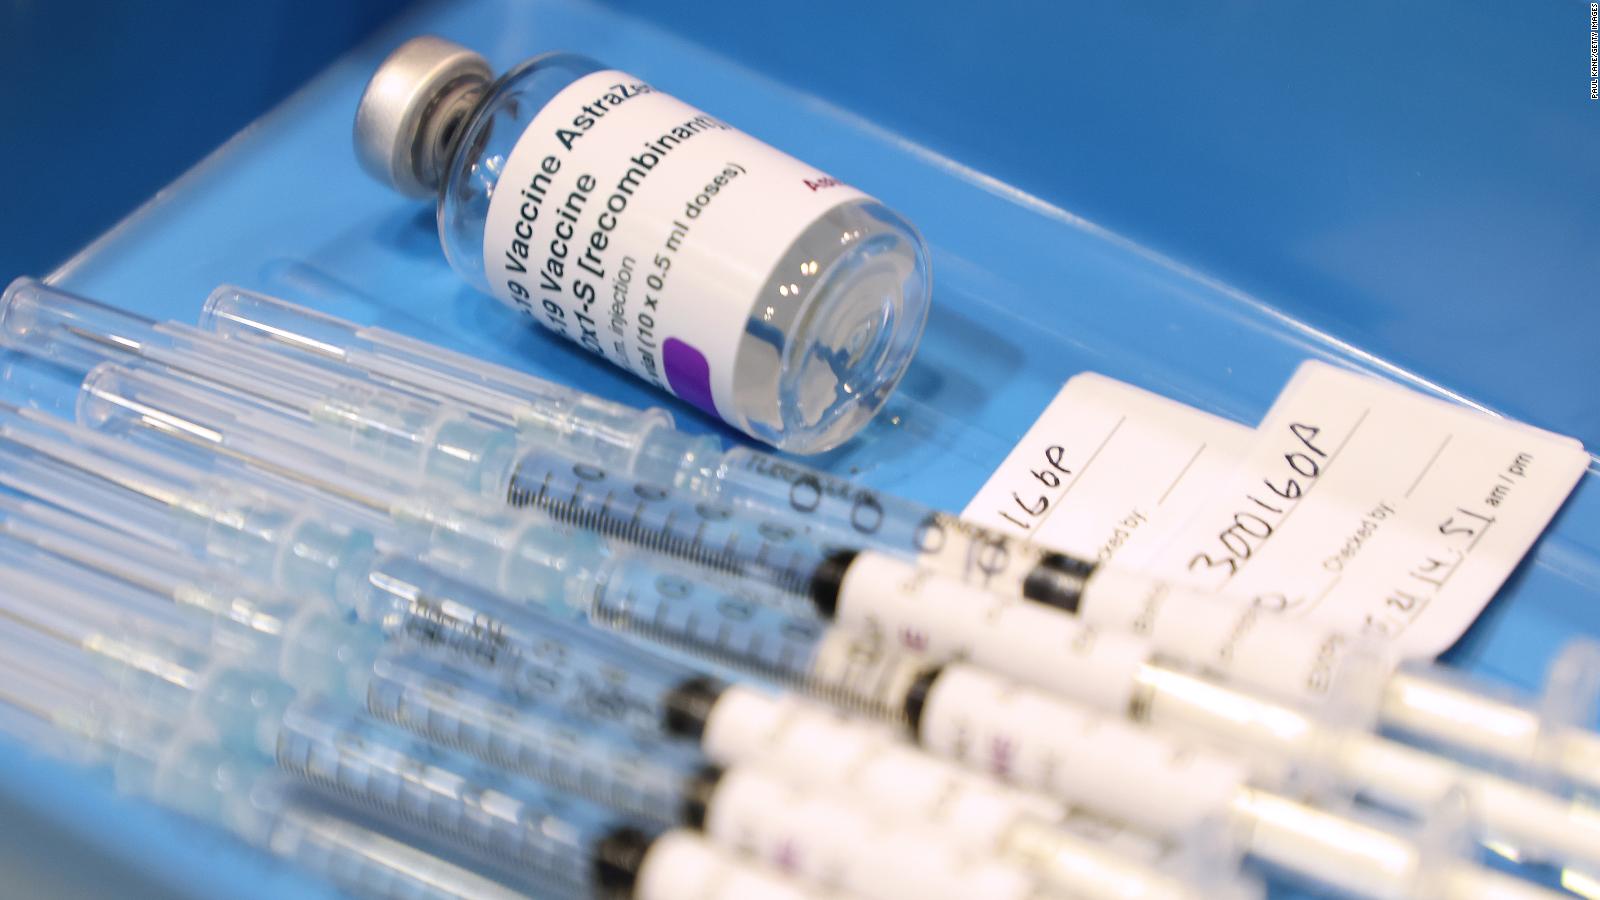 Retirará AstraZeneca su vacuna contra el COVID-19 a nivel mundial